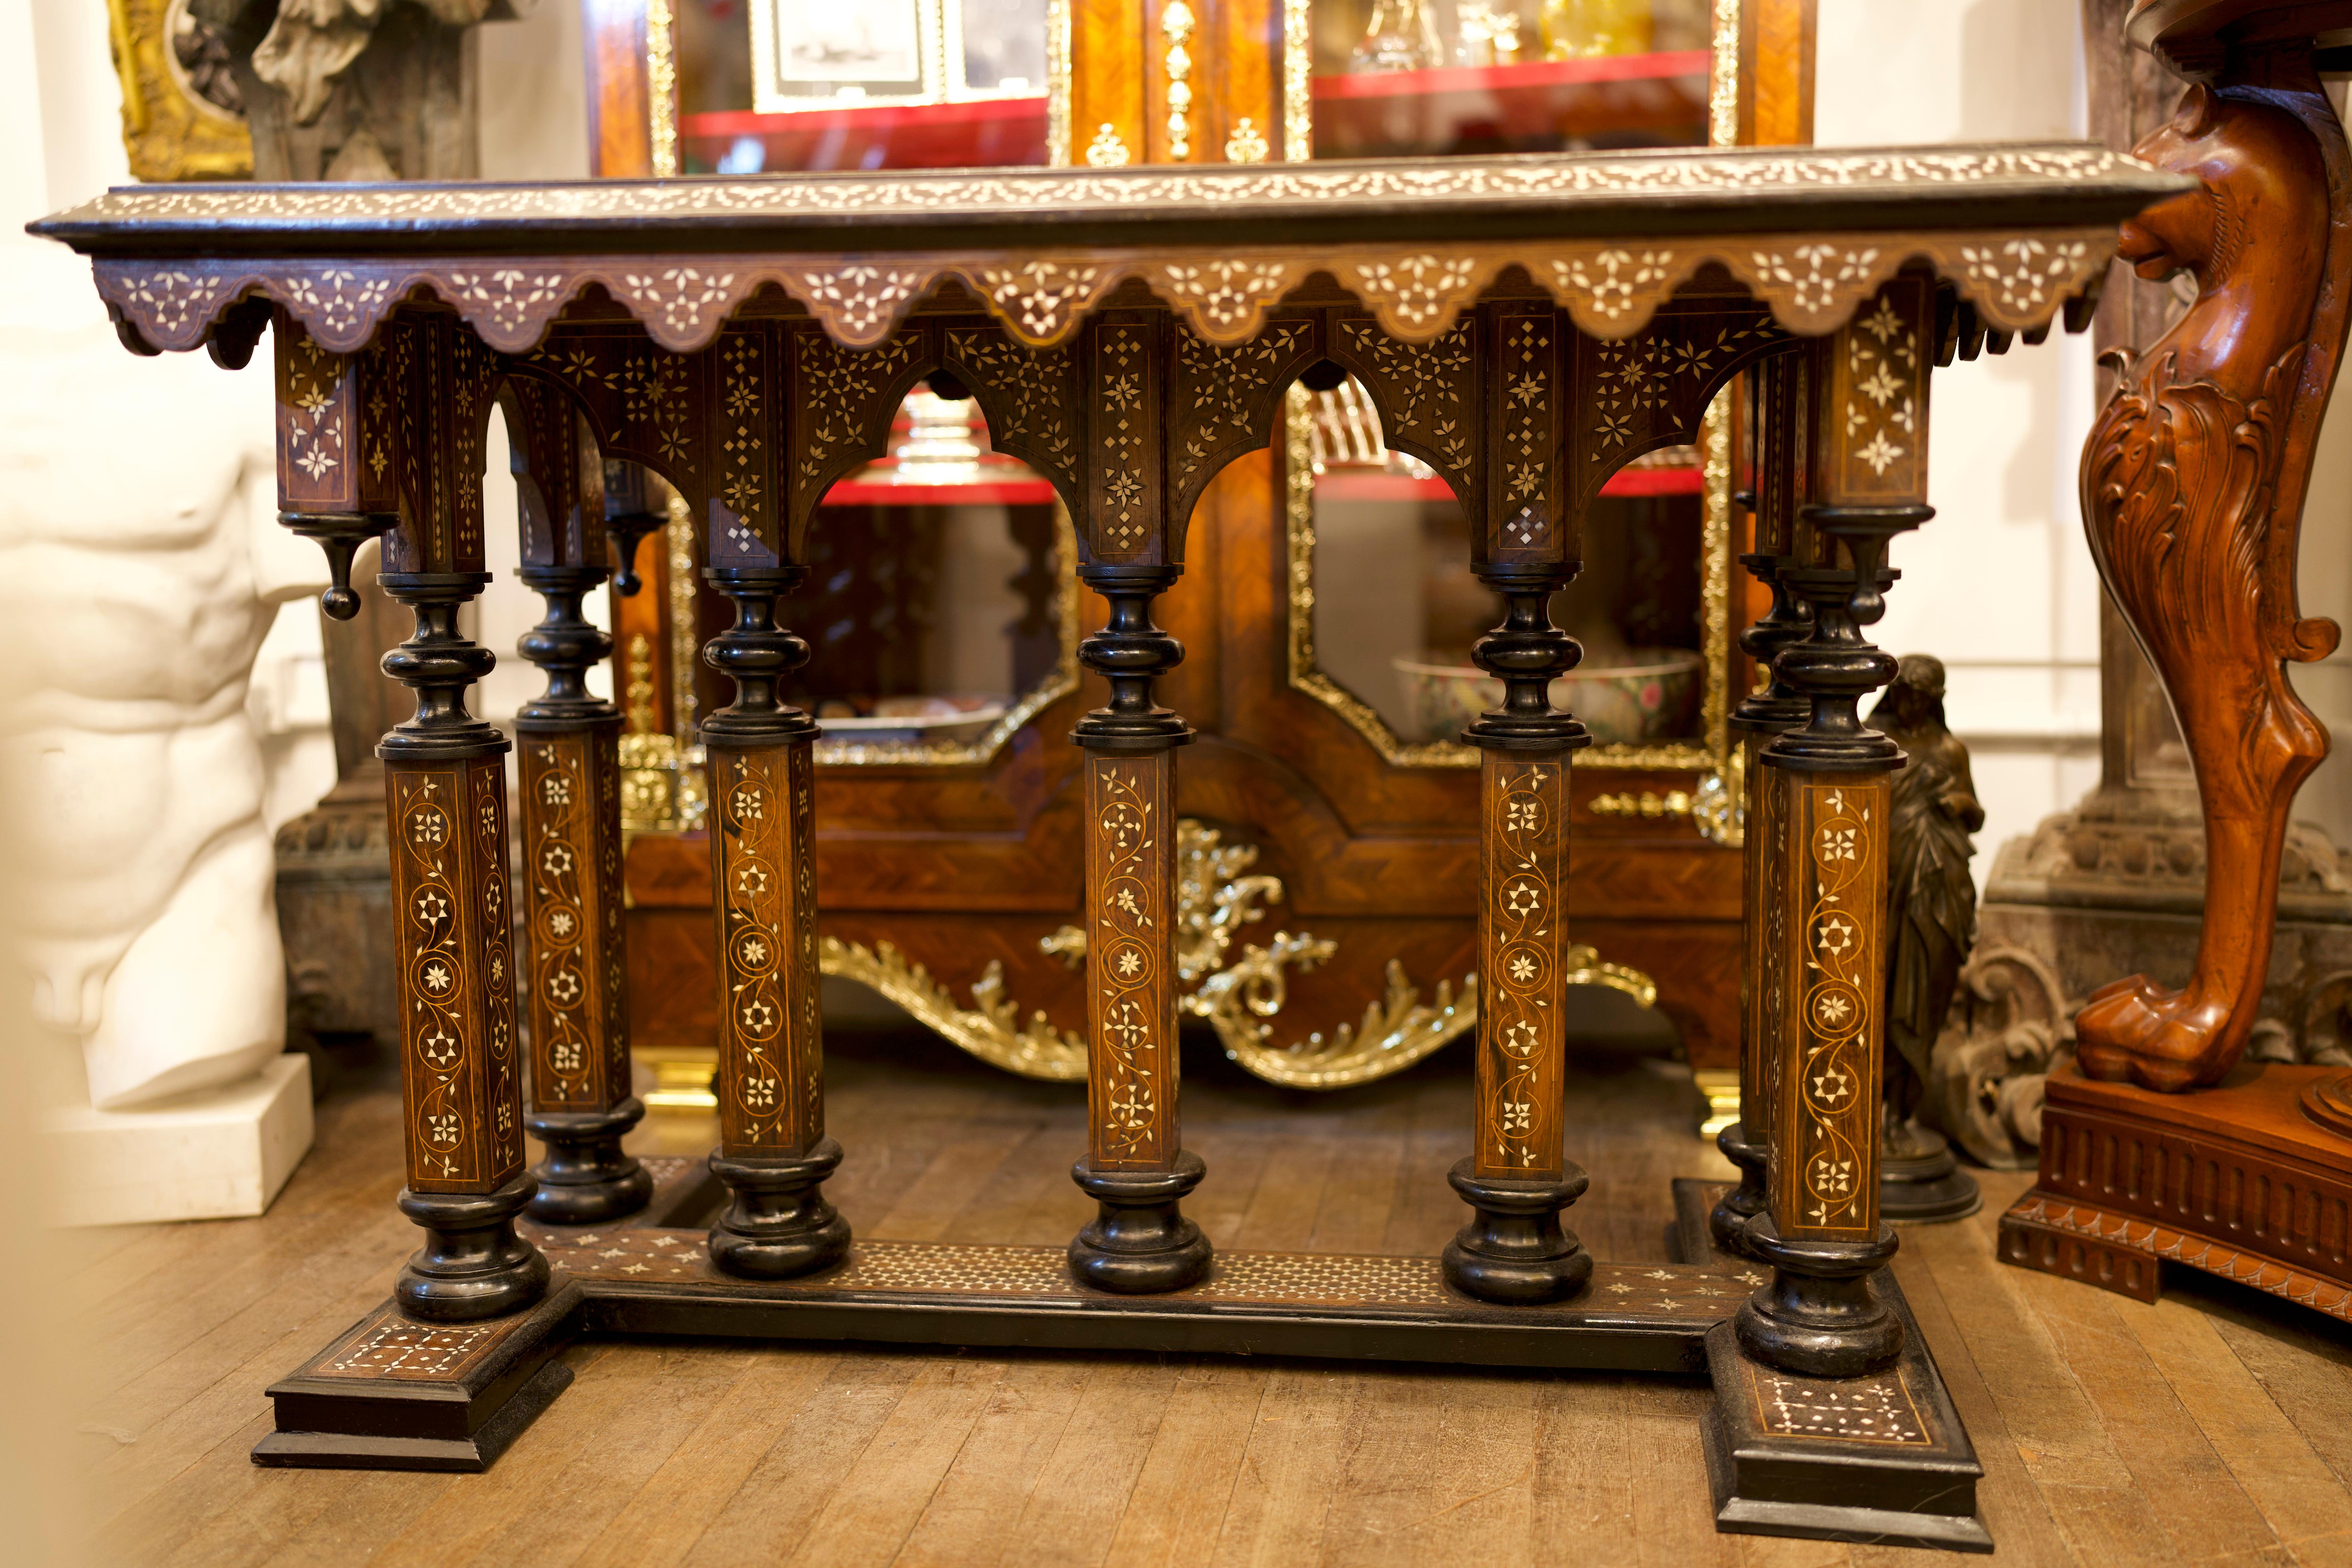 Ein schöner Intarsien-Mitteltisch im Stil der italienischen Renaissance aus dem 19. Die Intarsien bestehen aus kunstvollen Blumenmustern und zarten Schnüren rundherum. Die Vorderseite des Tisches zeigt eine atemberaubende Szene, deren Intarsien sich